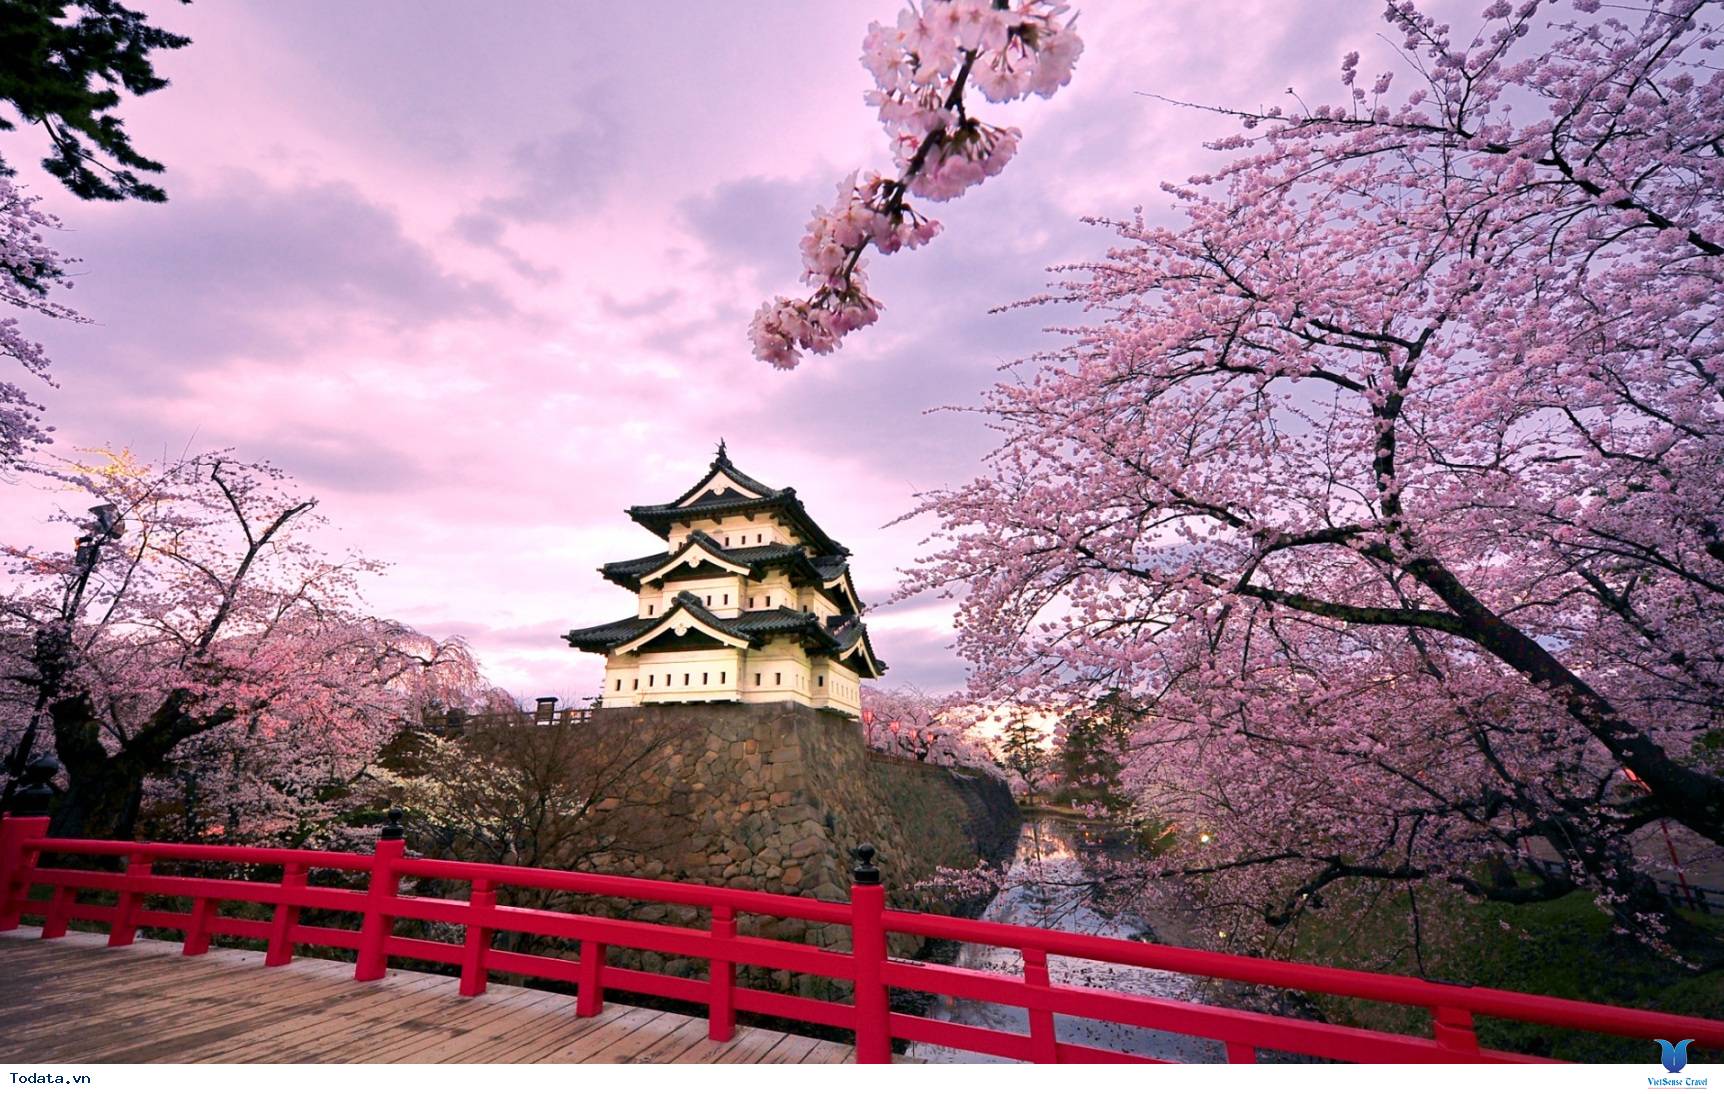 Điểm ngắm Hoa Anh Đào tại Nhật Bản: Nhật Bản là điểm đến hoàn hảo để thưởng ngoạn vẻ đẹp của hoa Anh Đào. Các khu vườn, công viên và ngôi đền lấy hoa Anh Đào làm chủ đề sẽ khiến bạn cảm thấy như đang sống trong một thiên đường màu hồng.